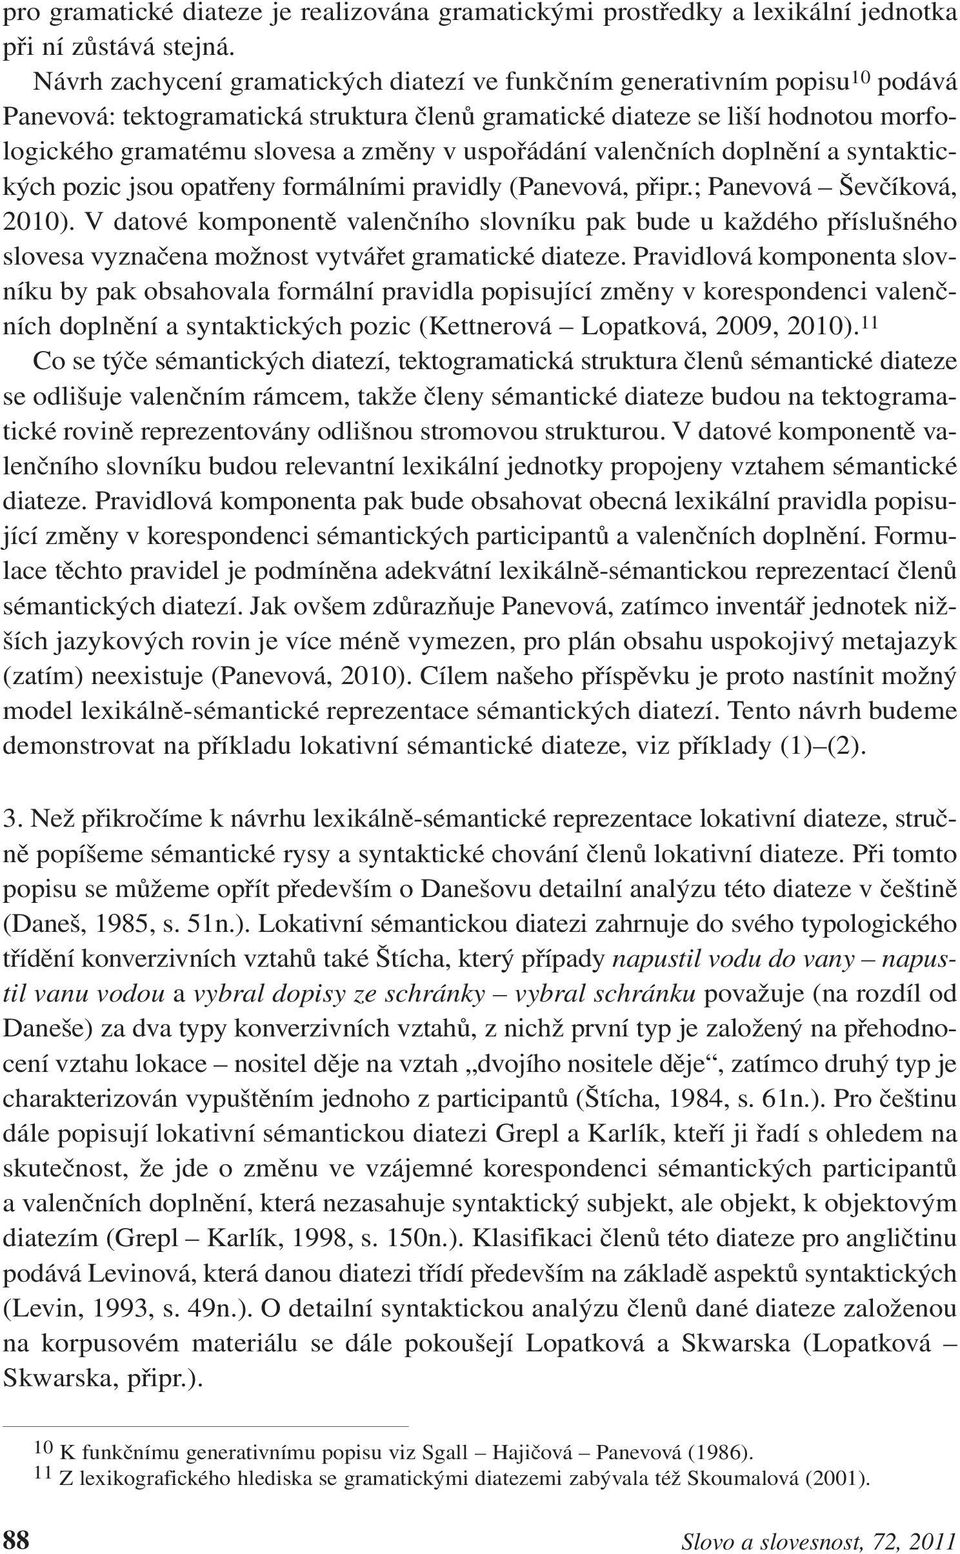 uspořádání valenčních doplnění a syntaktických pozic jsou opatřeny formálními pravidly (Panevová, připr.; Panevová Ševčíková, 2010).